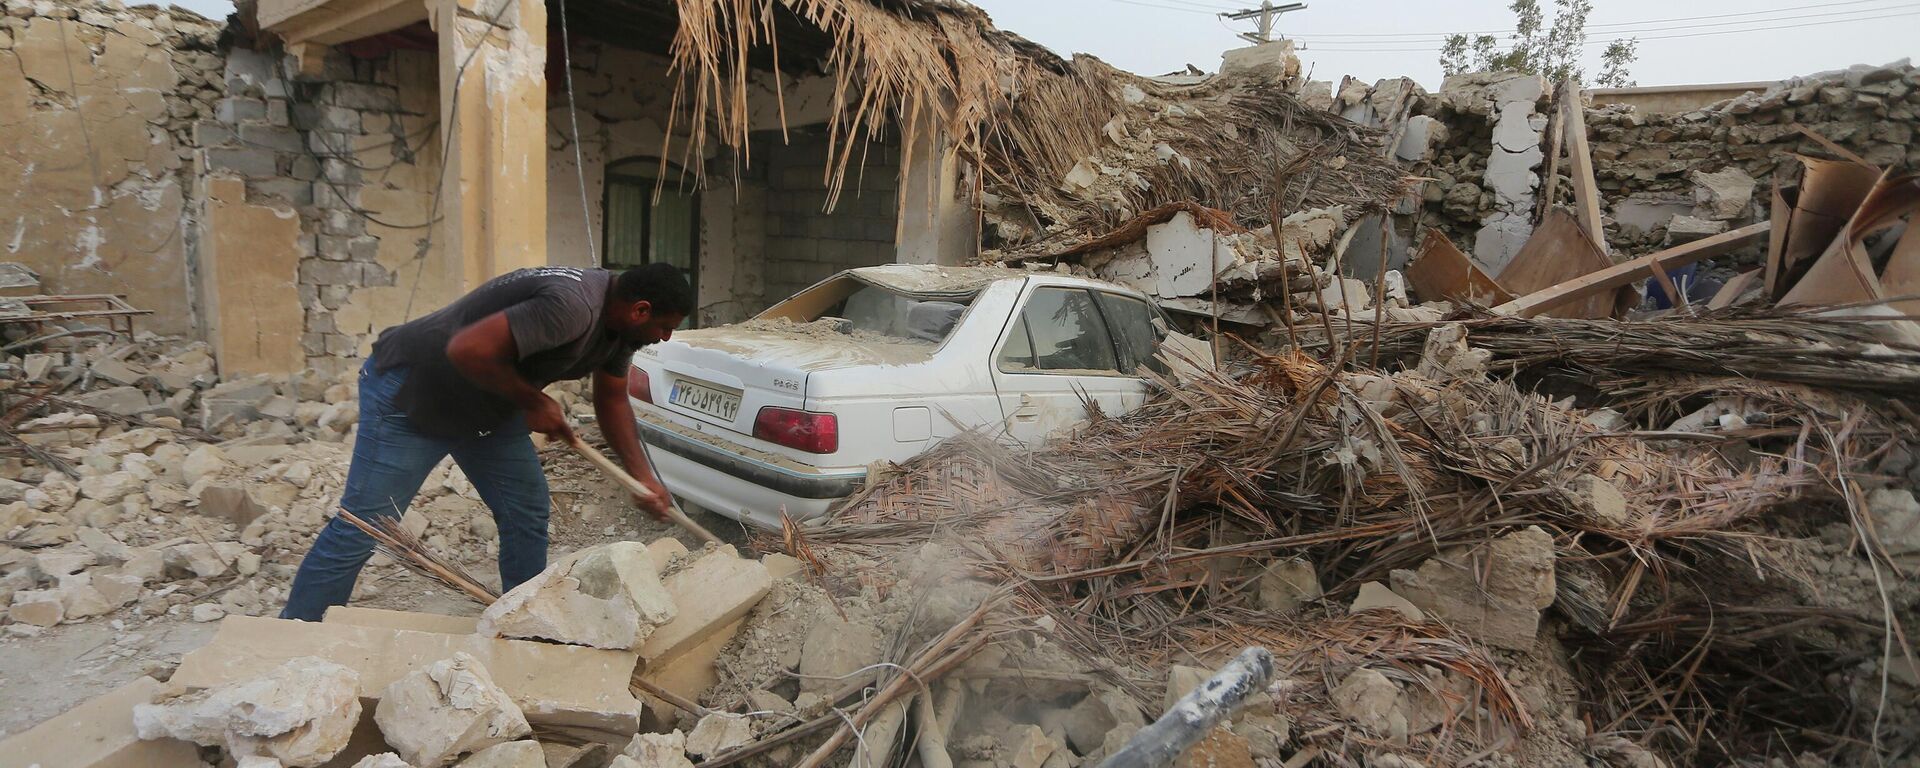 تداعيات زلزال قوي ضرب محافظة هرمزغان جنوب إيران، 2 يوليو 2022 - سبوتنيك عربي, 1920, 30.01.2023